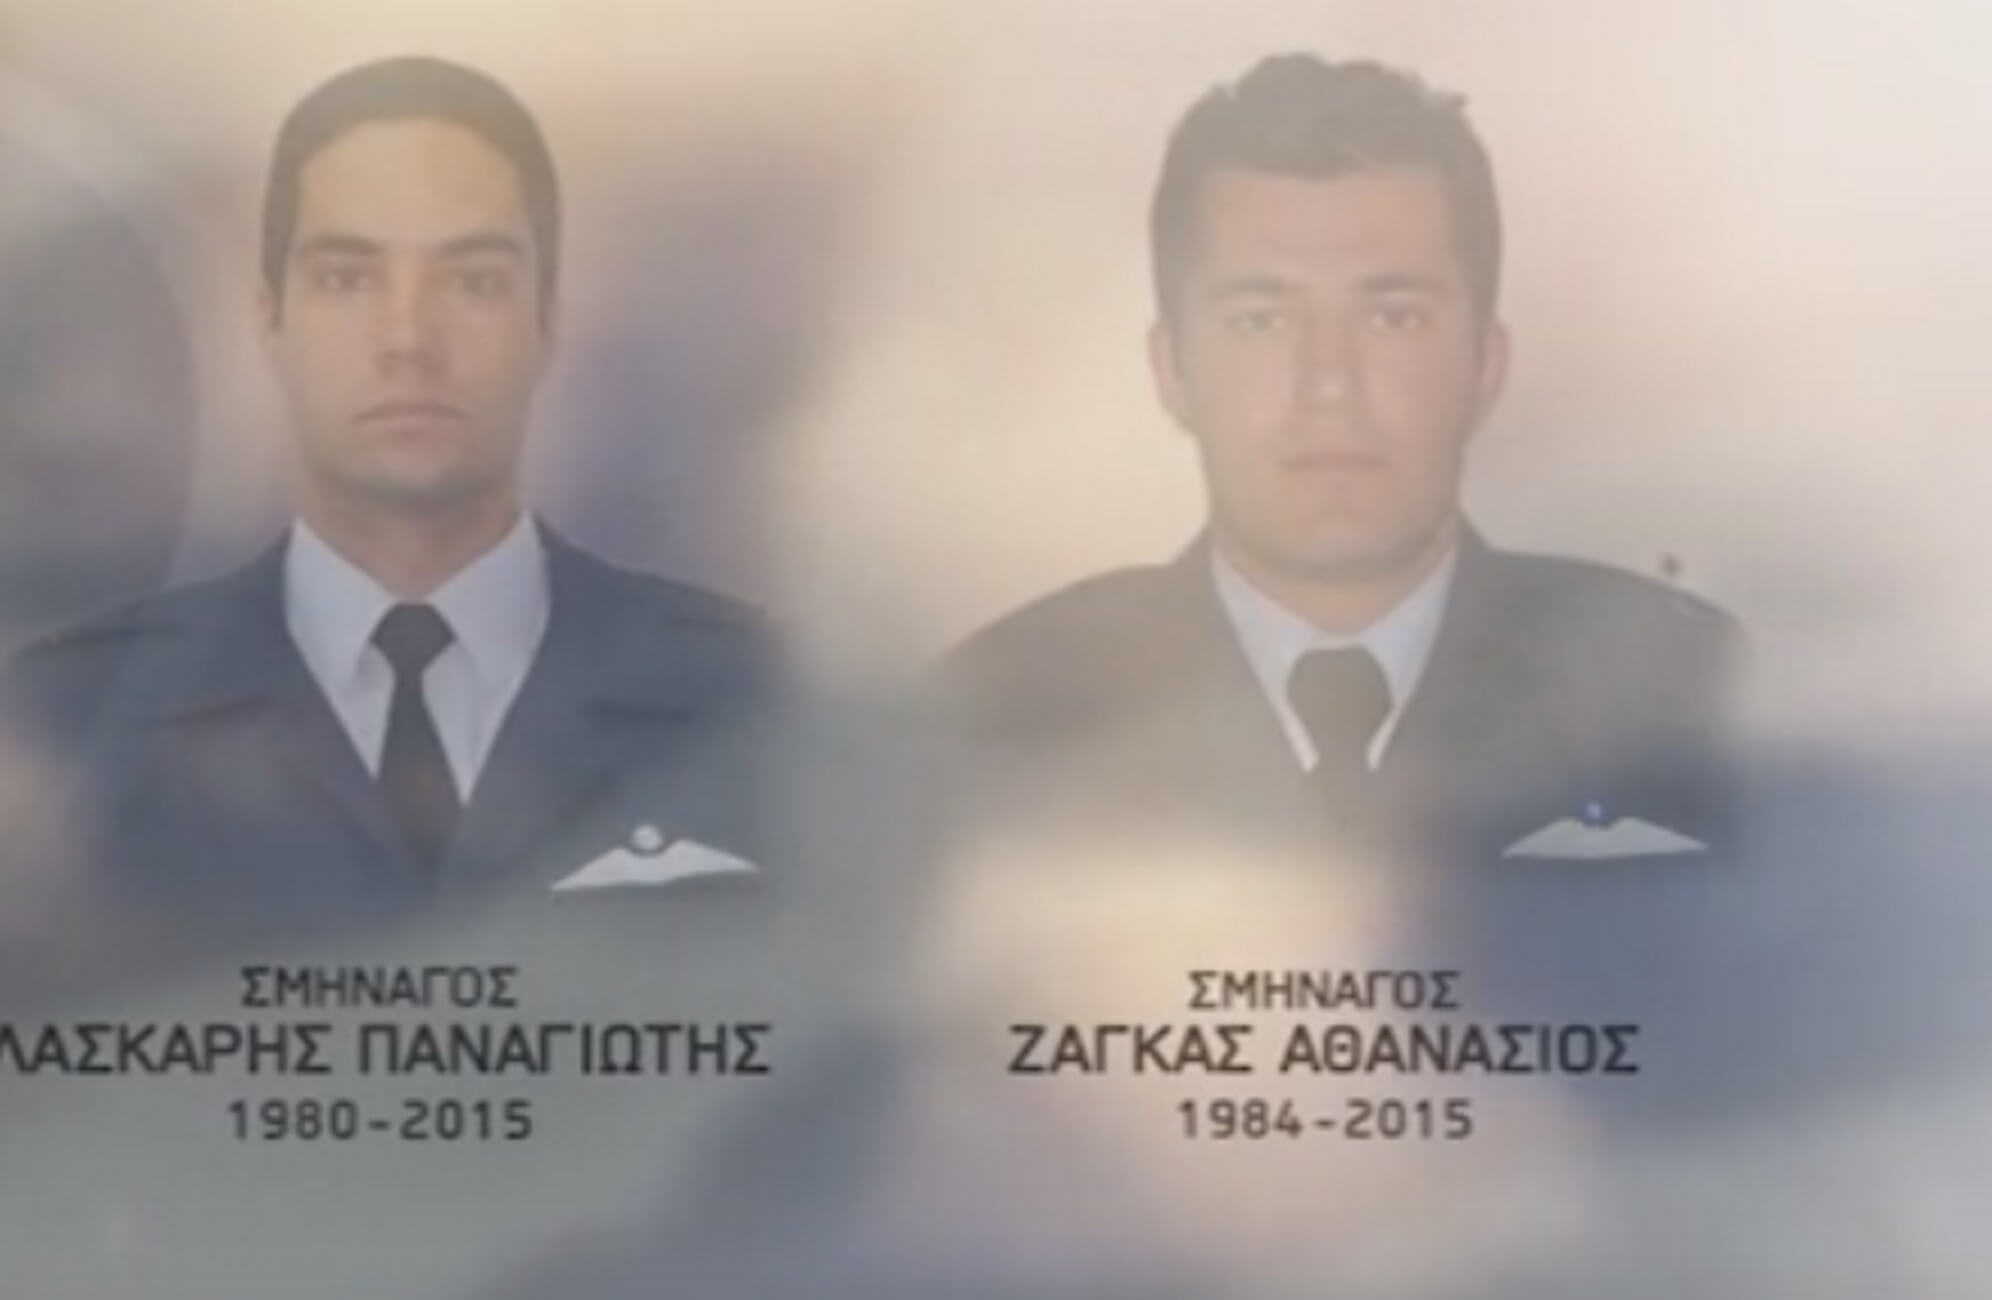 Βόλος: Δεν ξέχασαν τους αδικοχαμένους πιλότους – Το βίντεο που προκαλεί συγκίνηση 4 χρόνια μετά την τραγωδία!